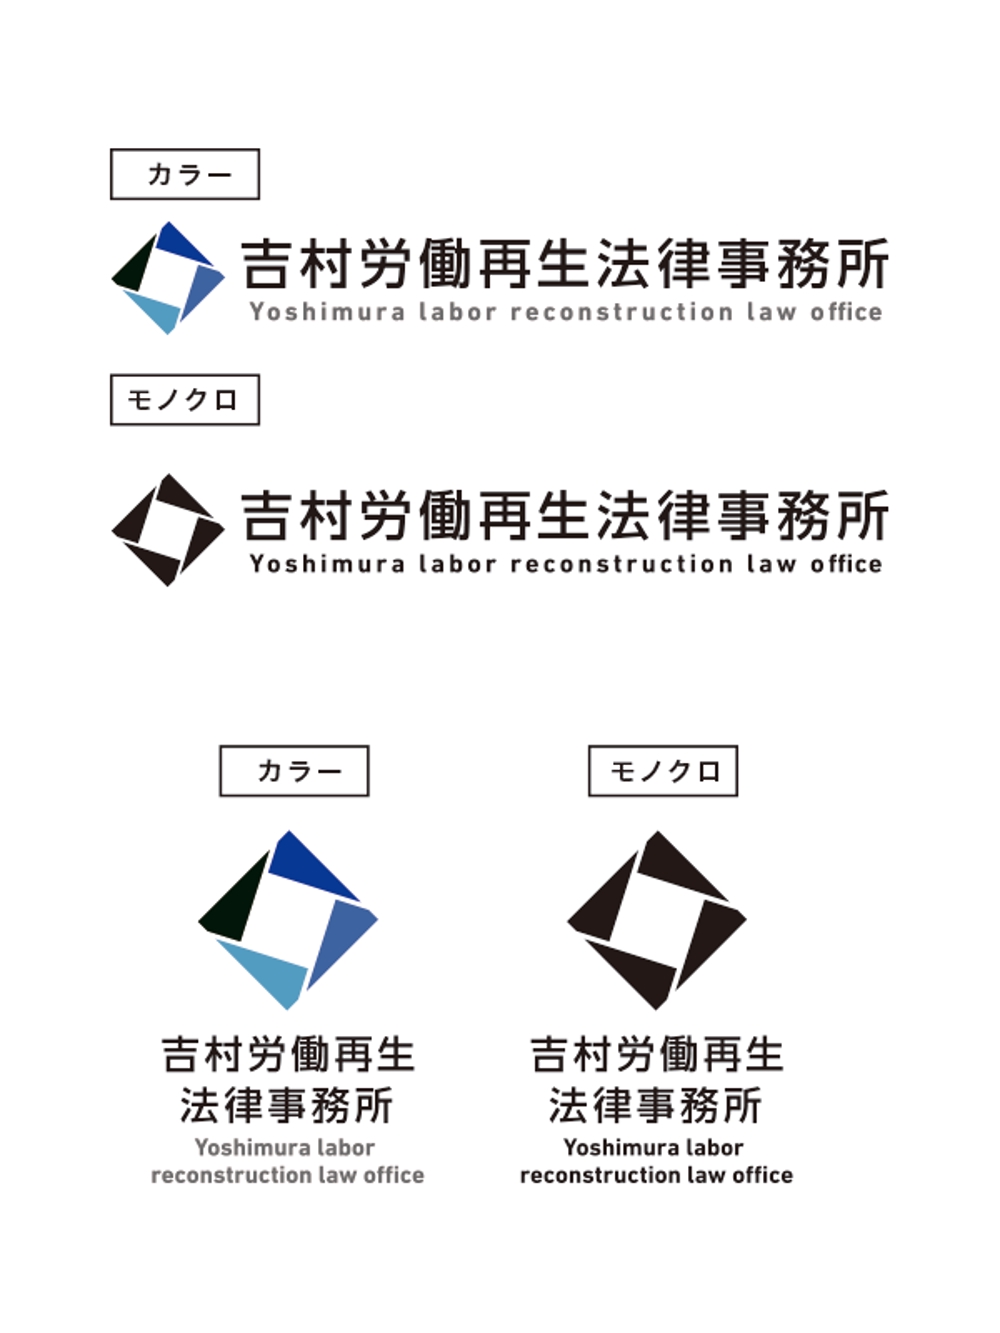 吉村労働再生事務所ロゴ作成